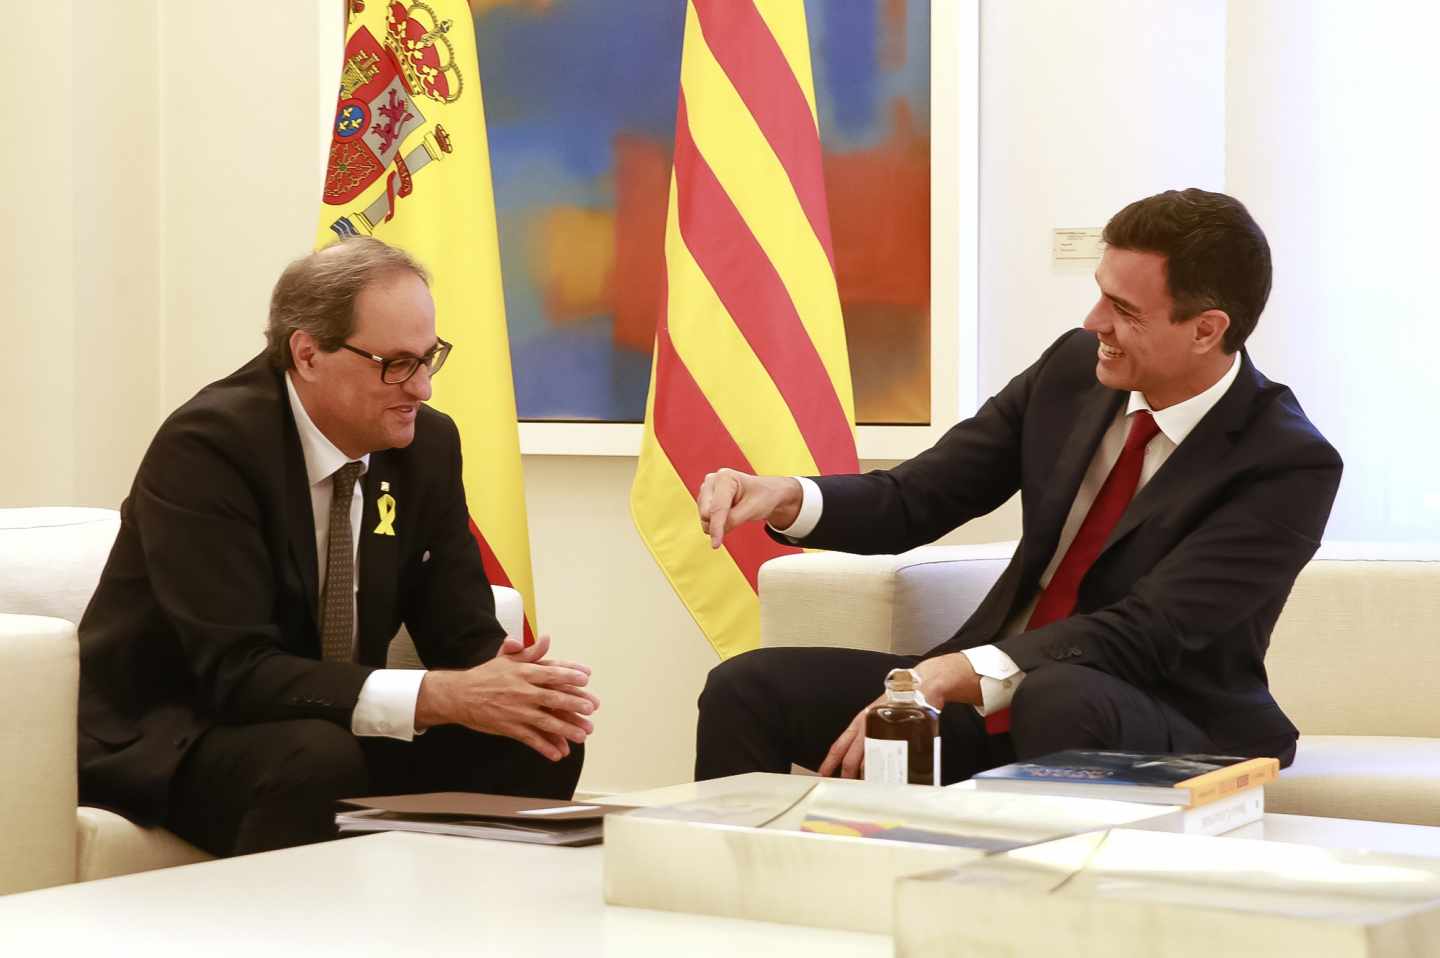 Un 60,6% de los españoles suspende la estrategia negociadora del Gobierno en Cataluña